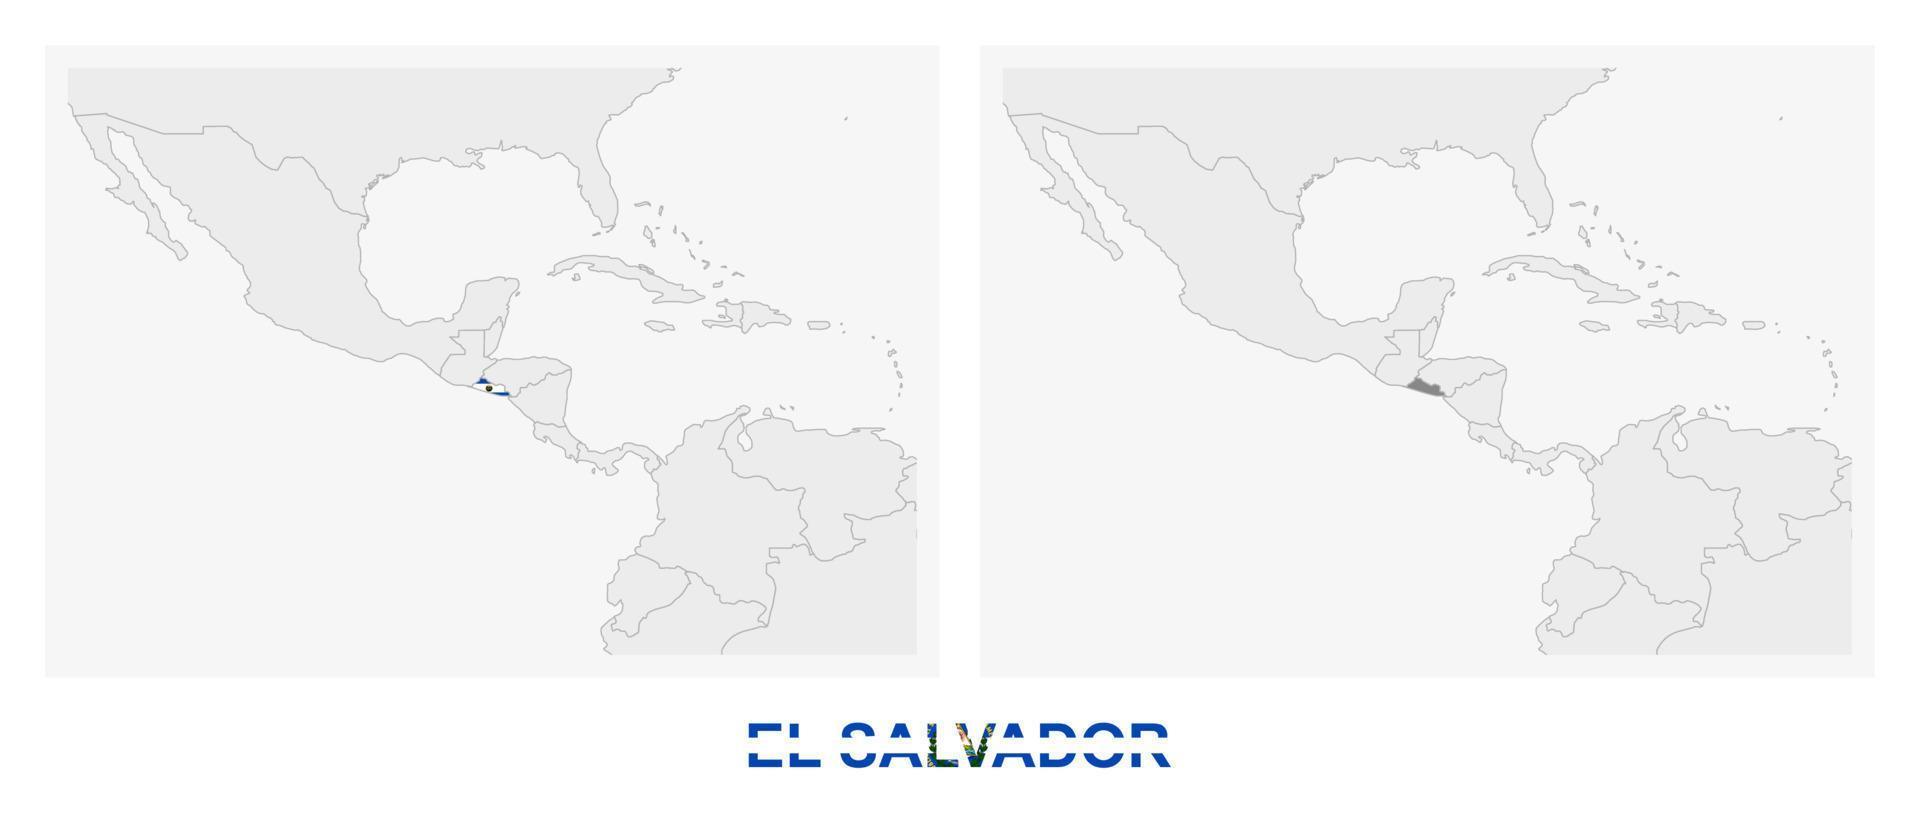 dos versiones del mapa de el salvador, con la bandera de el salvador y resaltada en gris oscuro. vector